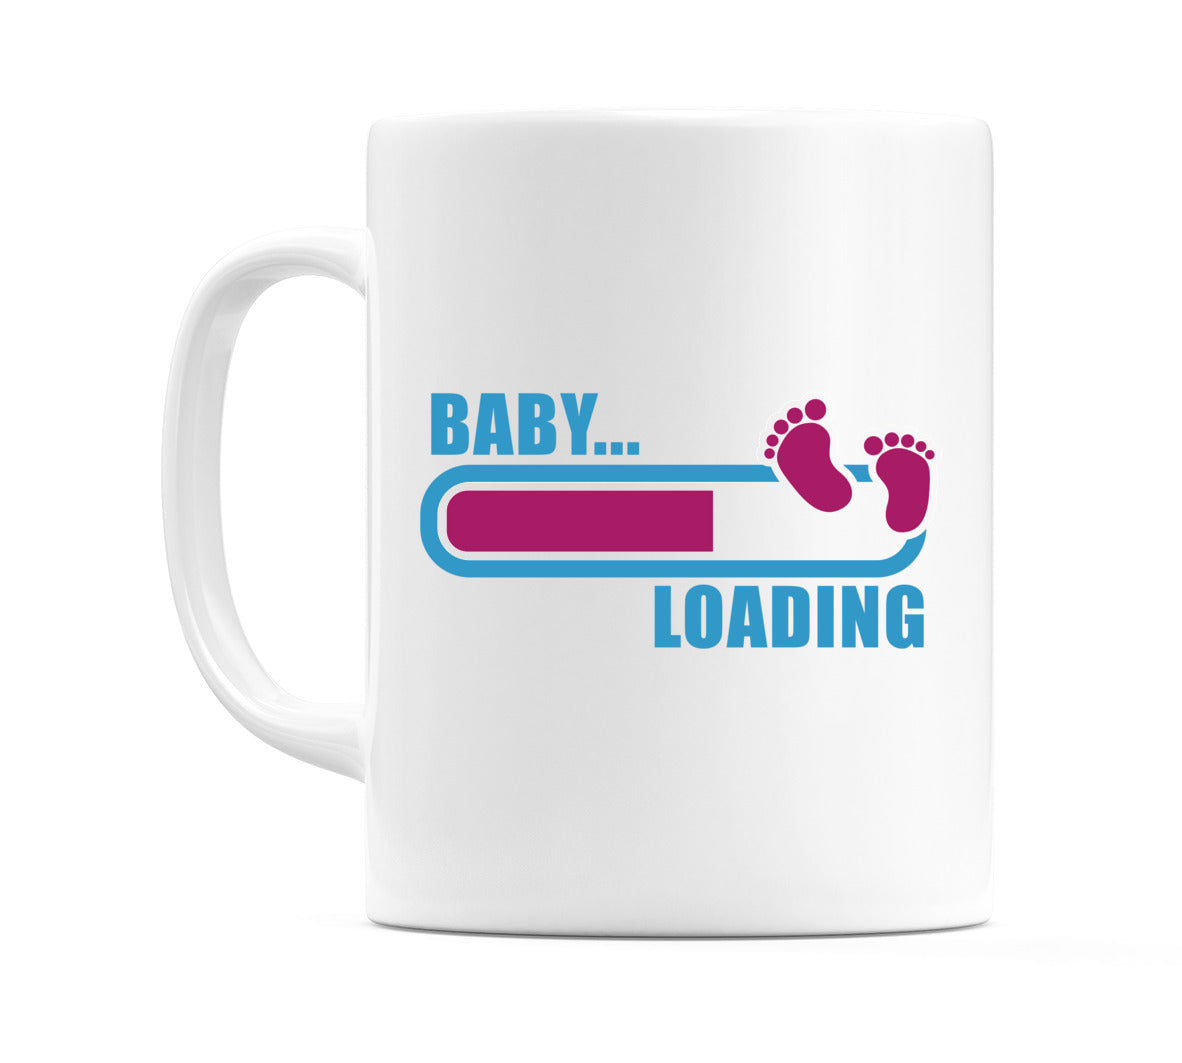 Baby Loading... Mug